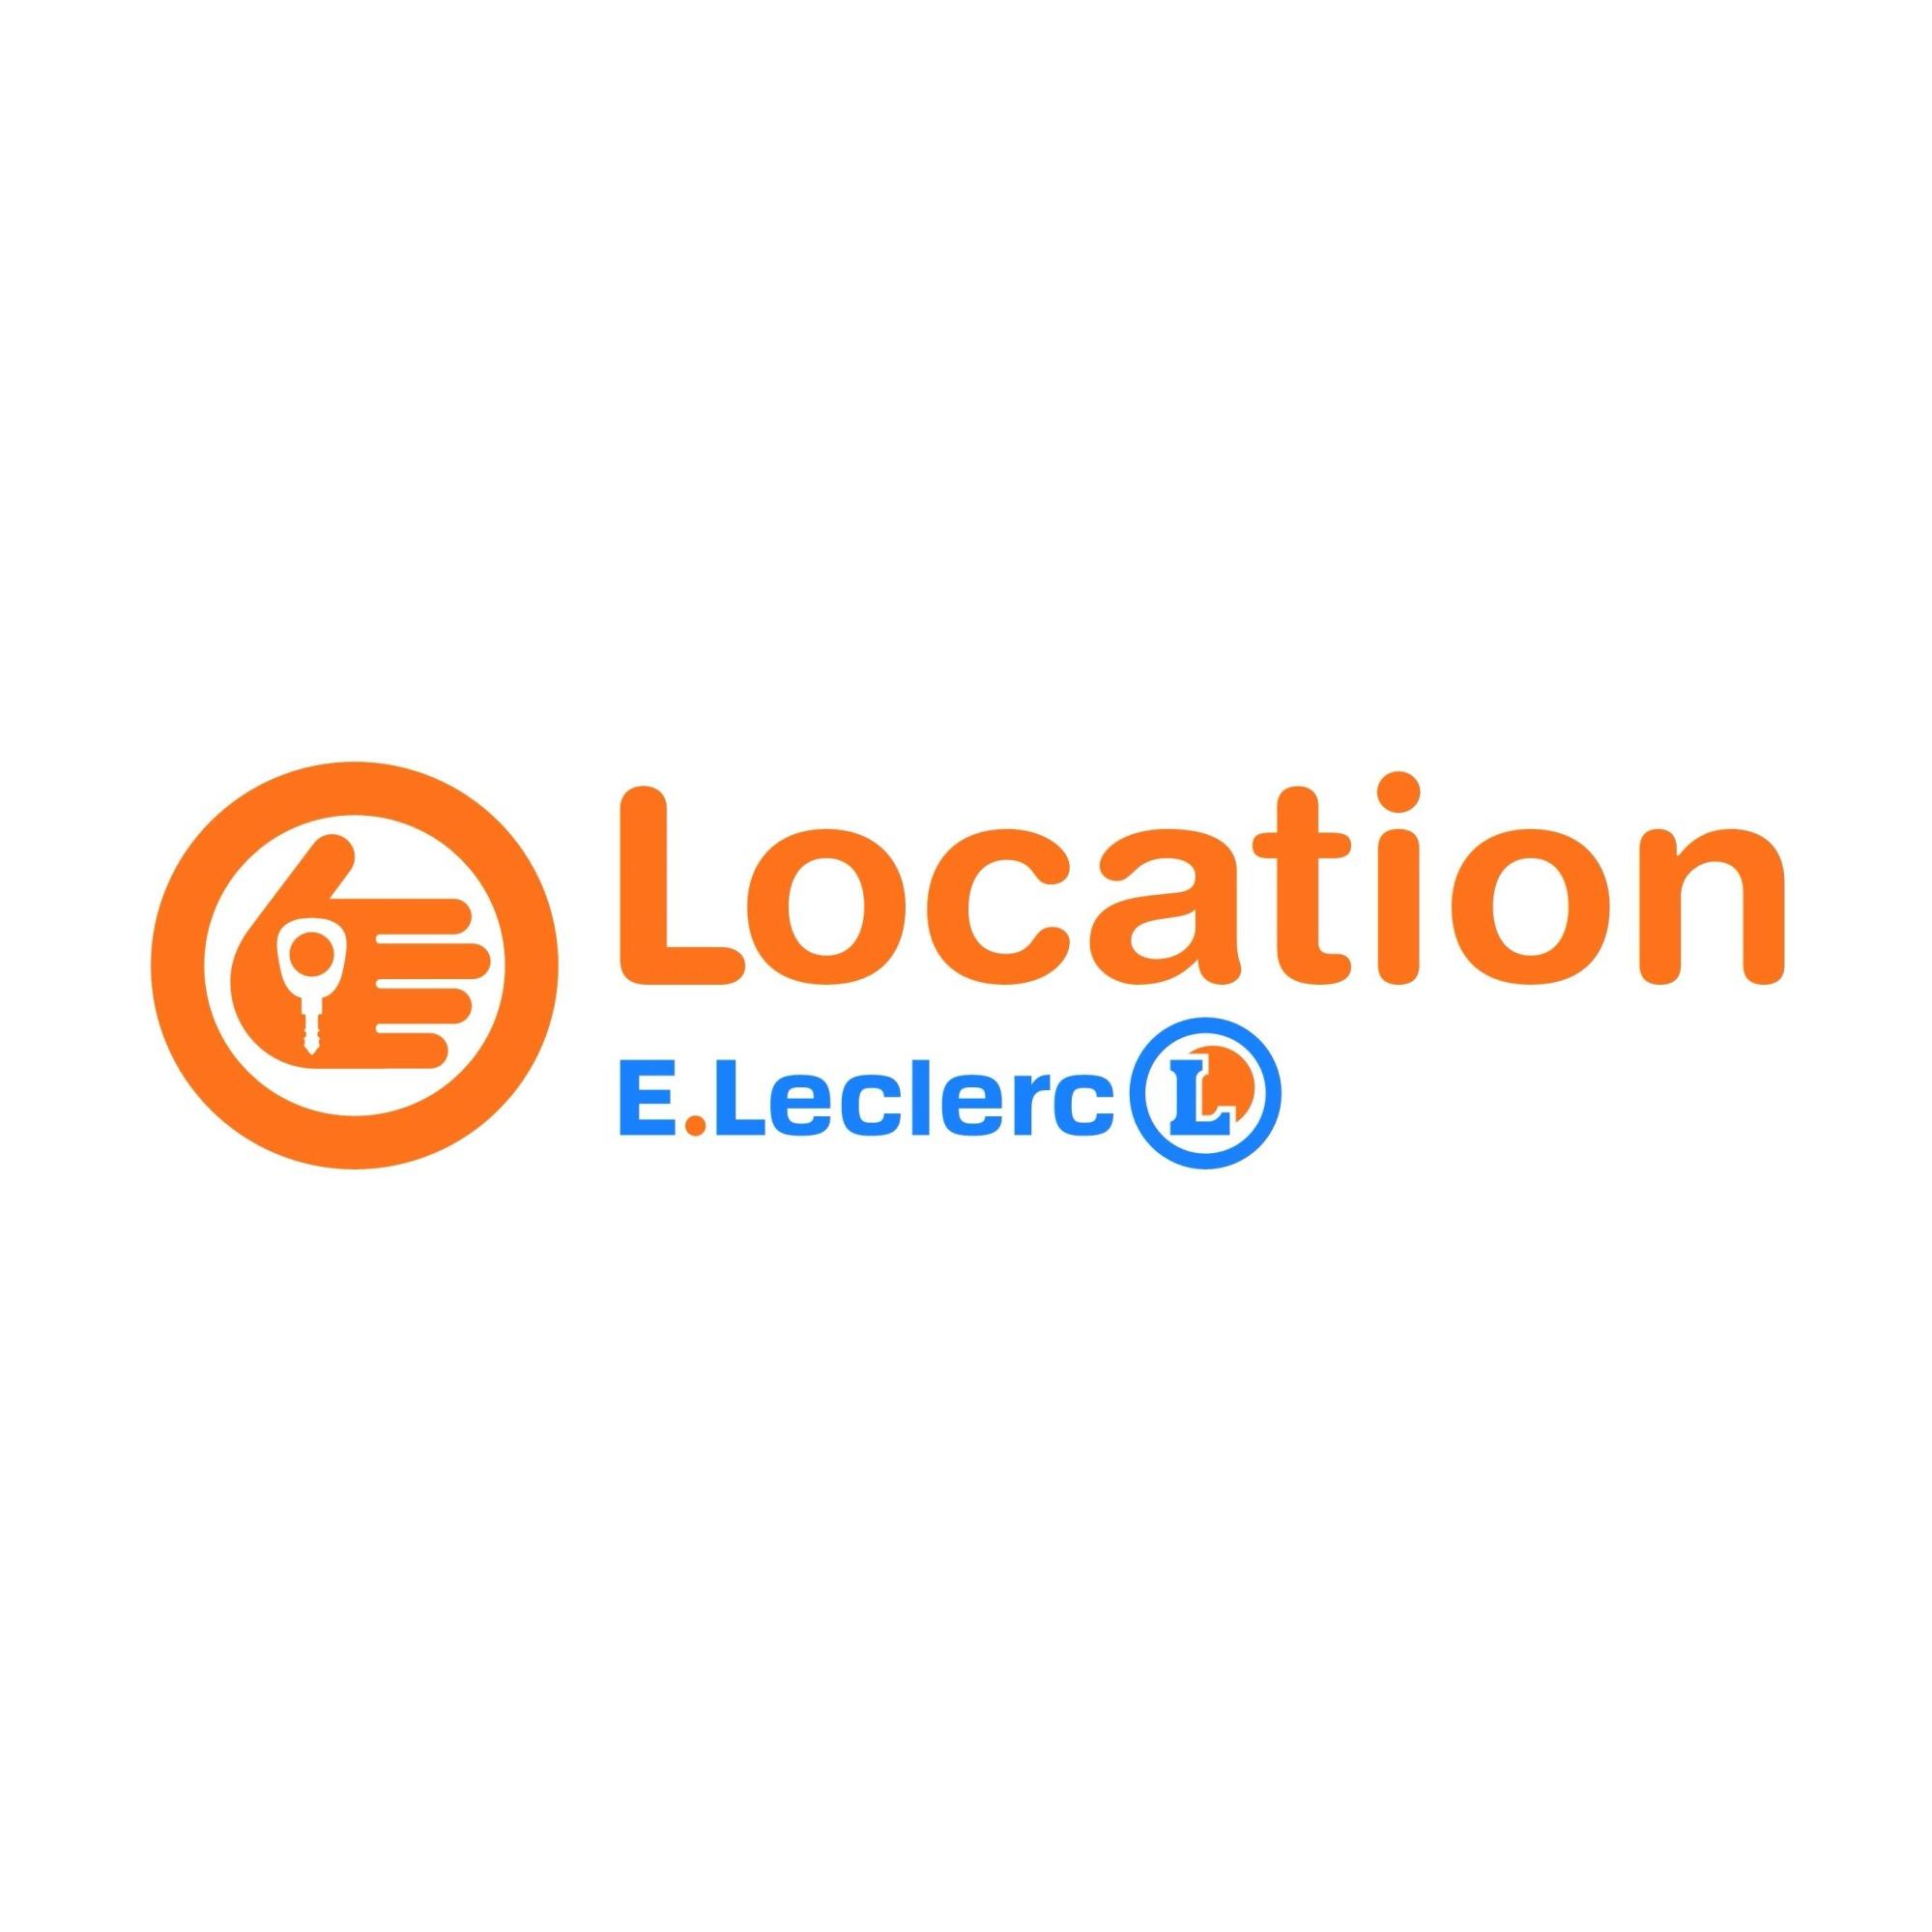 E.leclerc Location Luçon